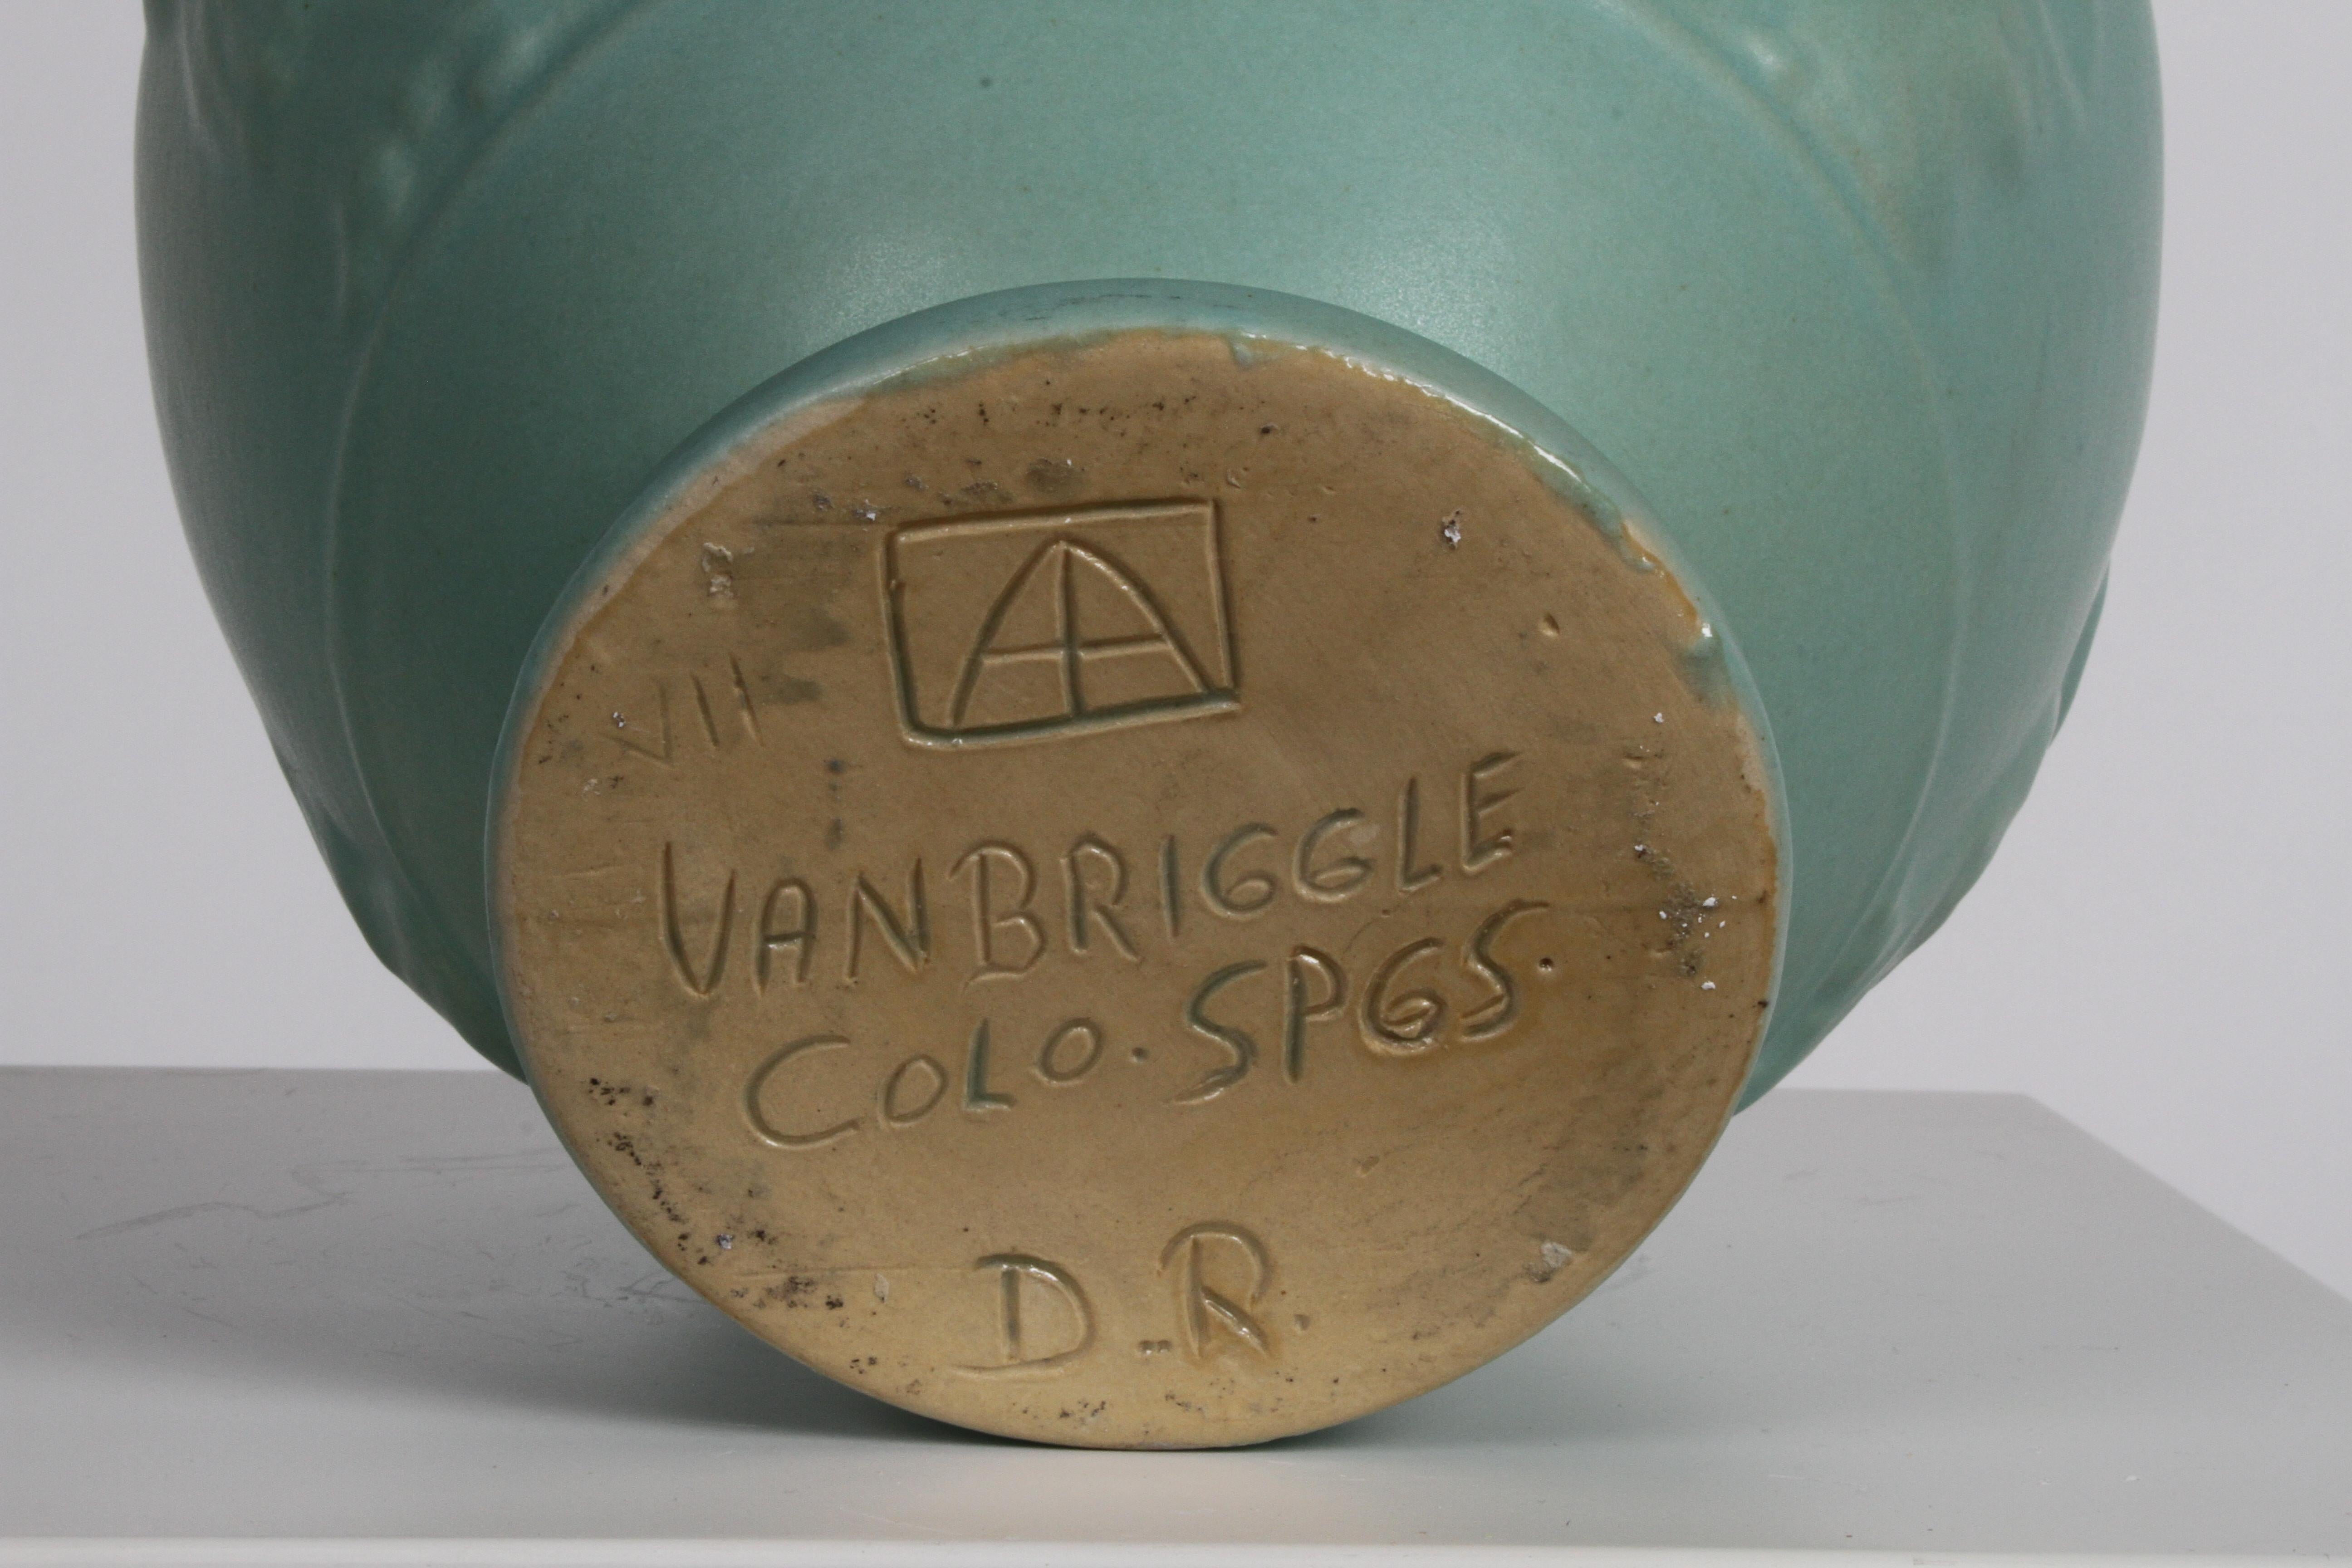 Van Briggle Turquoise Ming Glaze Grecian Urn or Vase Signed D.R. For Sale 5